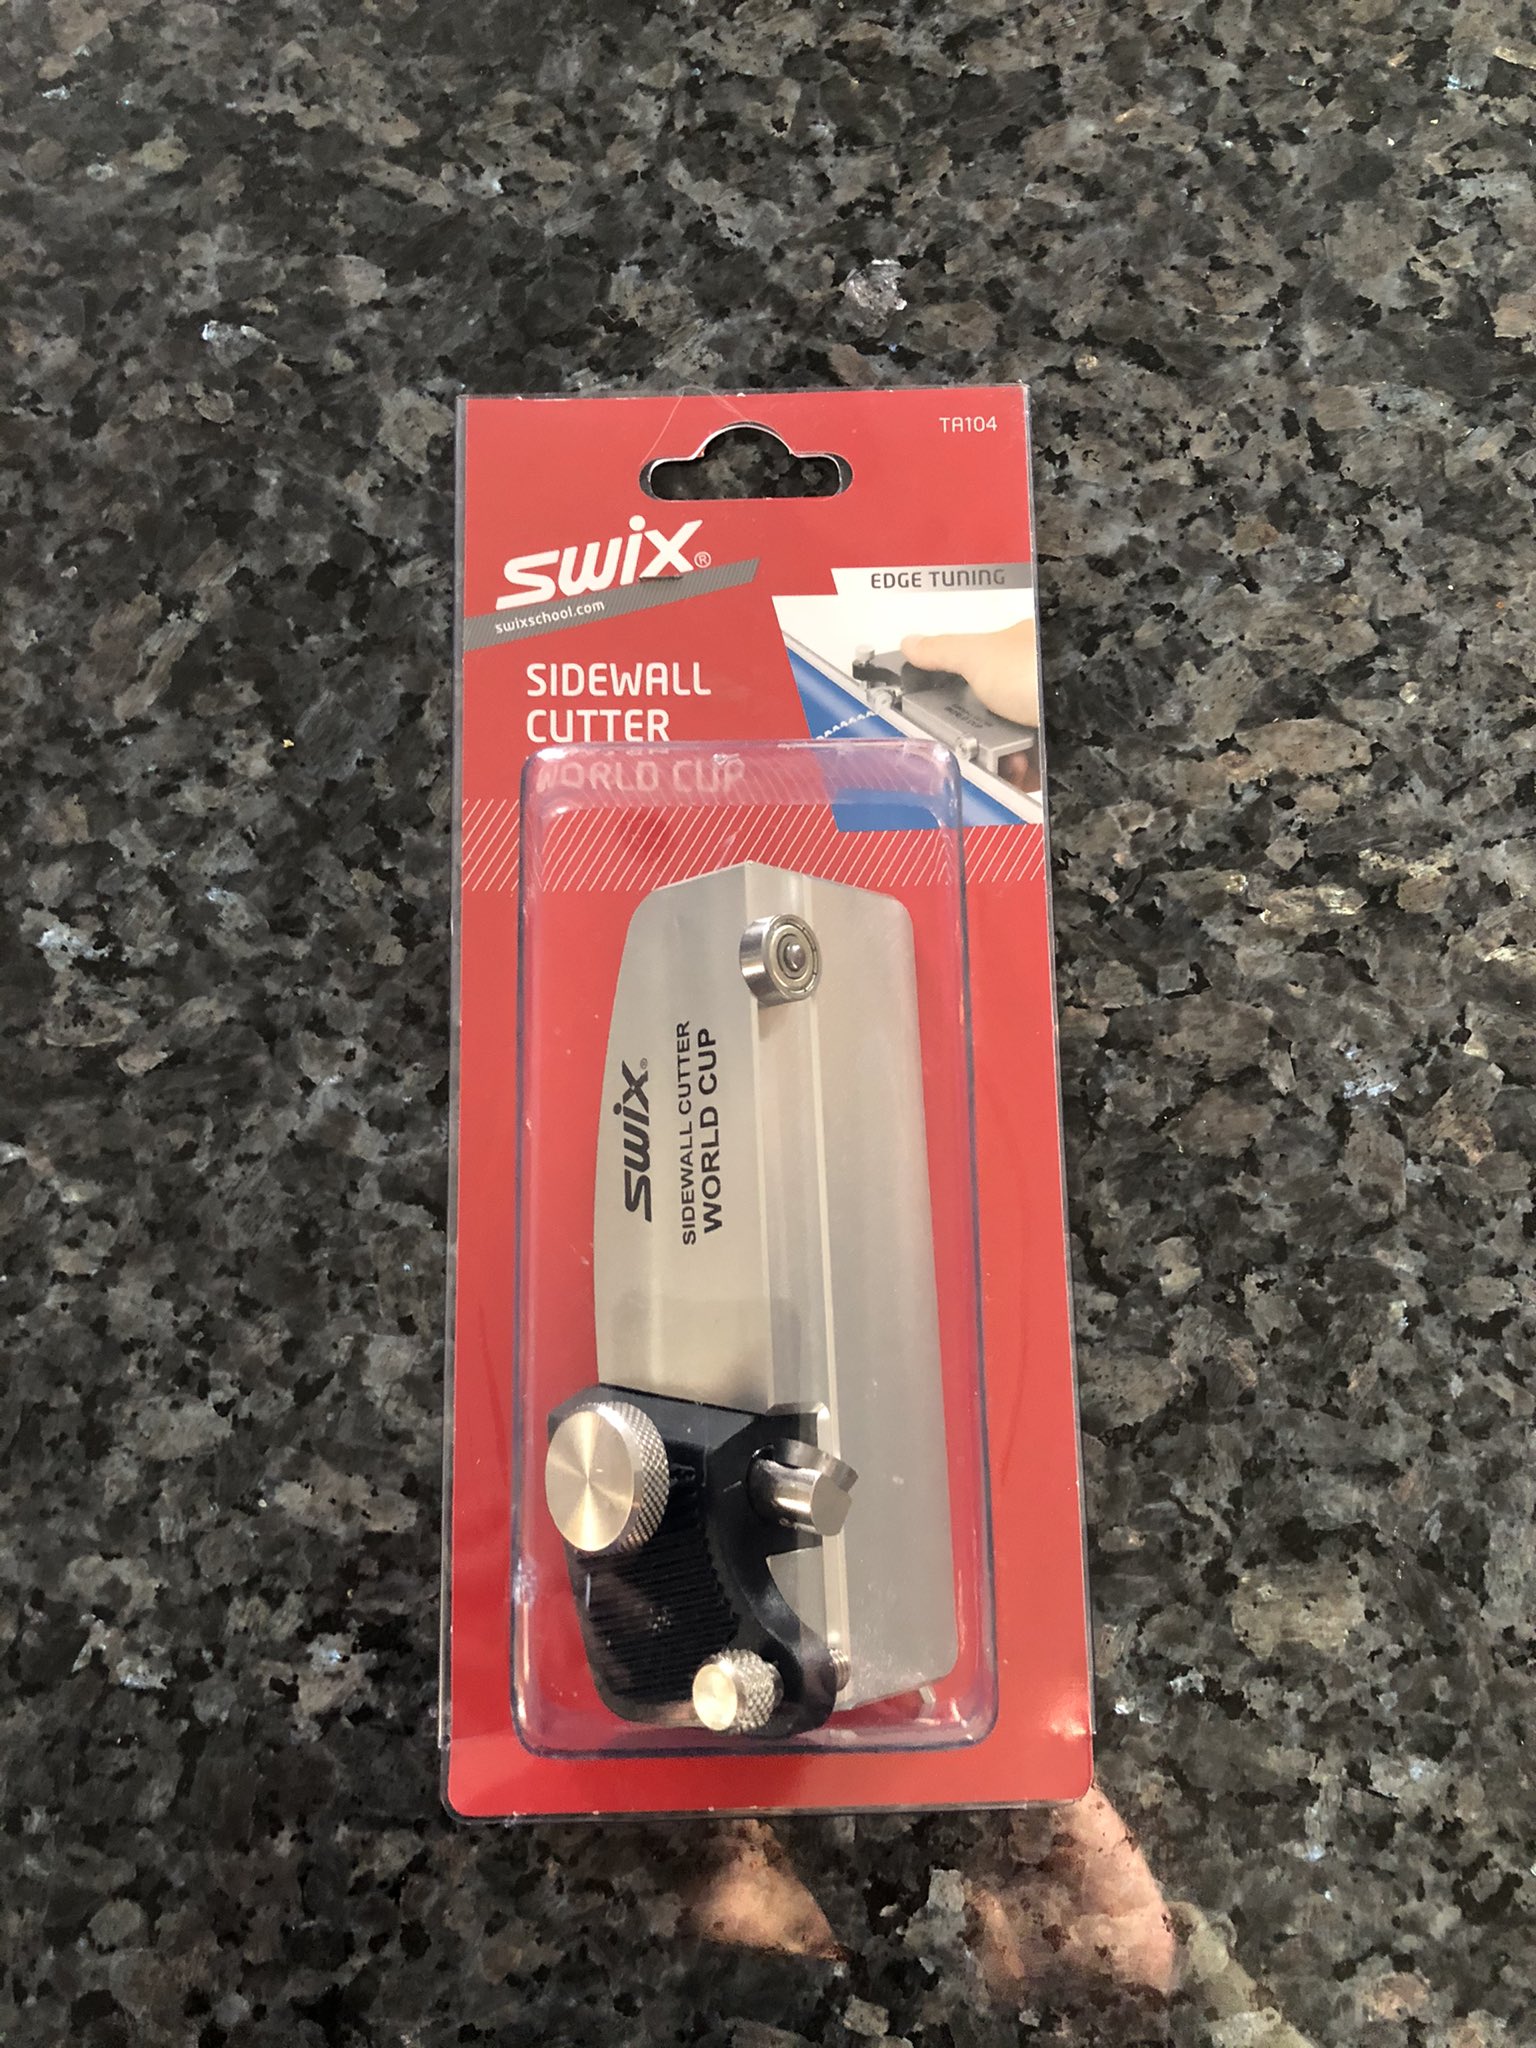 Swix TA104 World Cup Sidewall Cutter